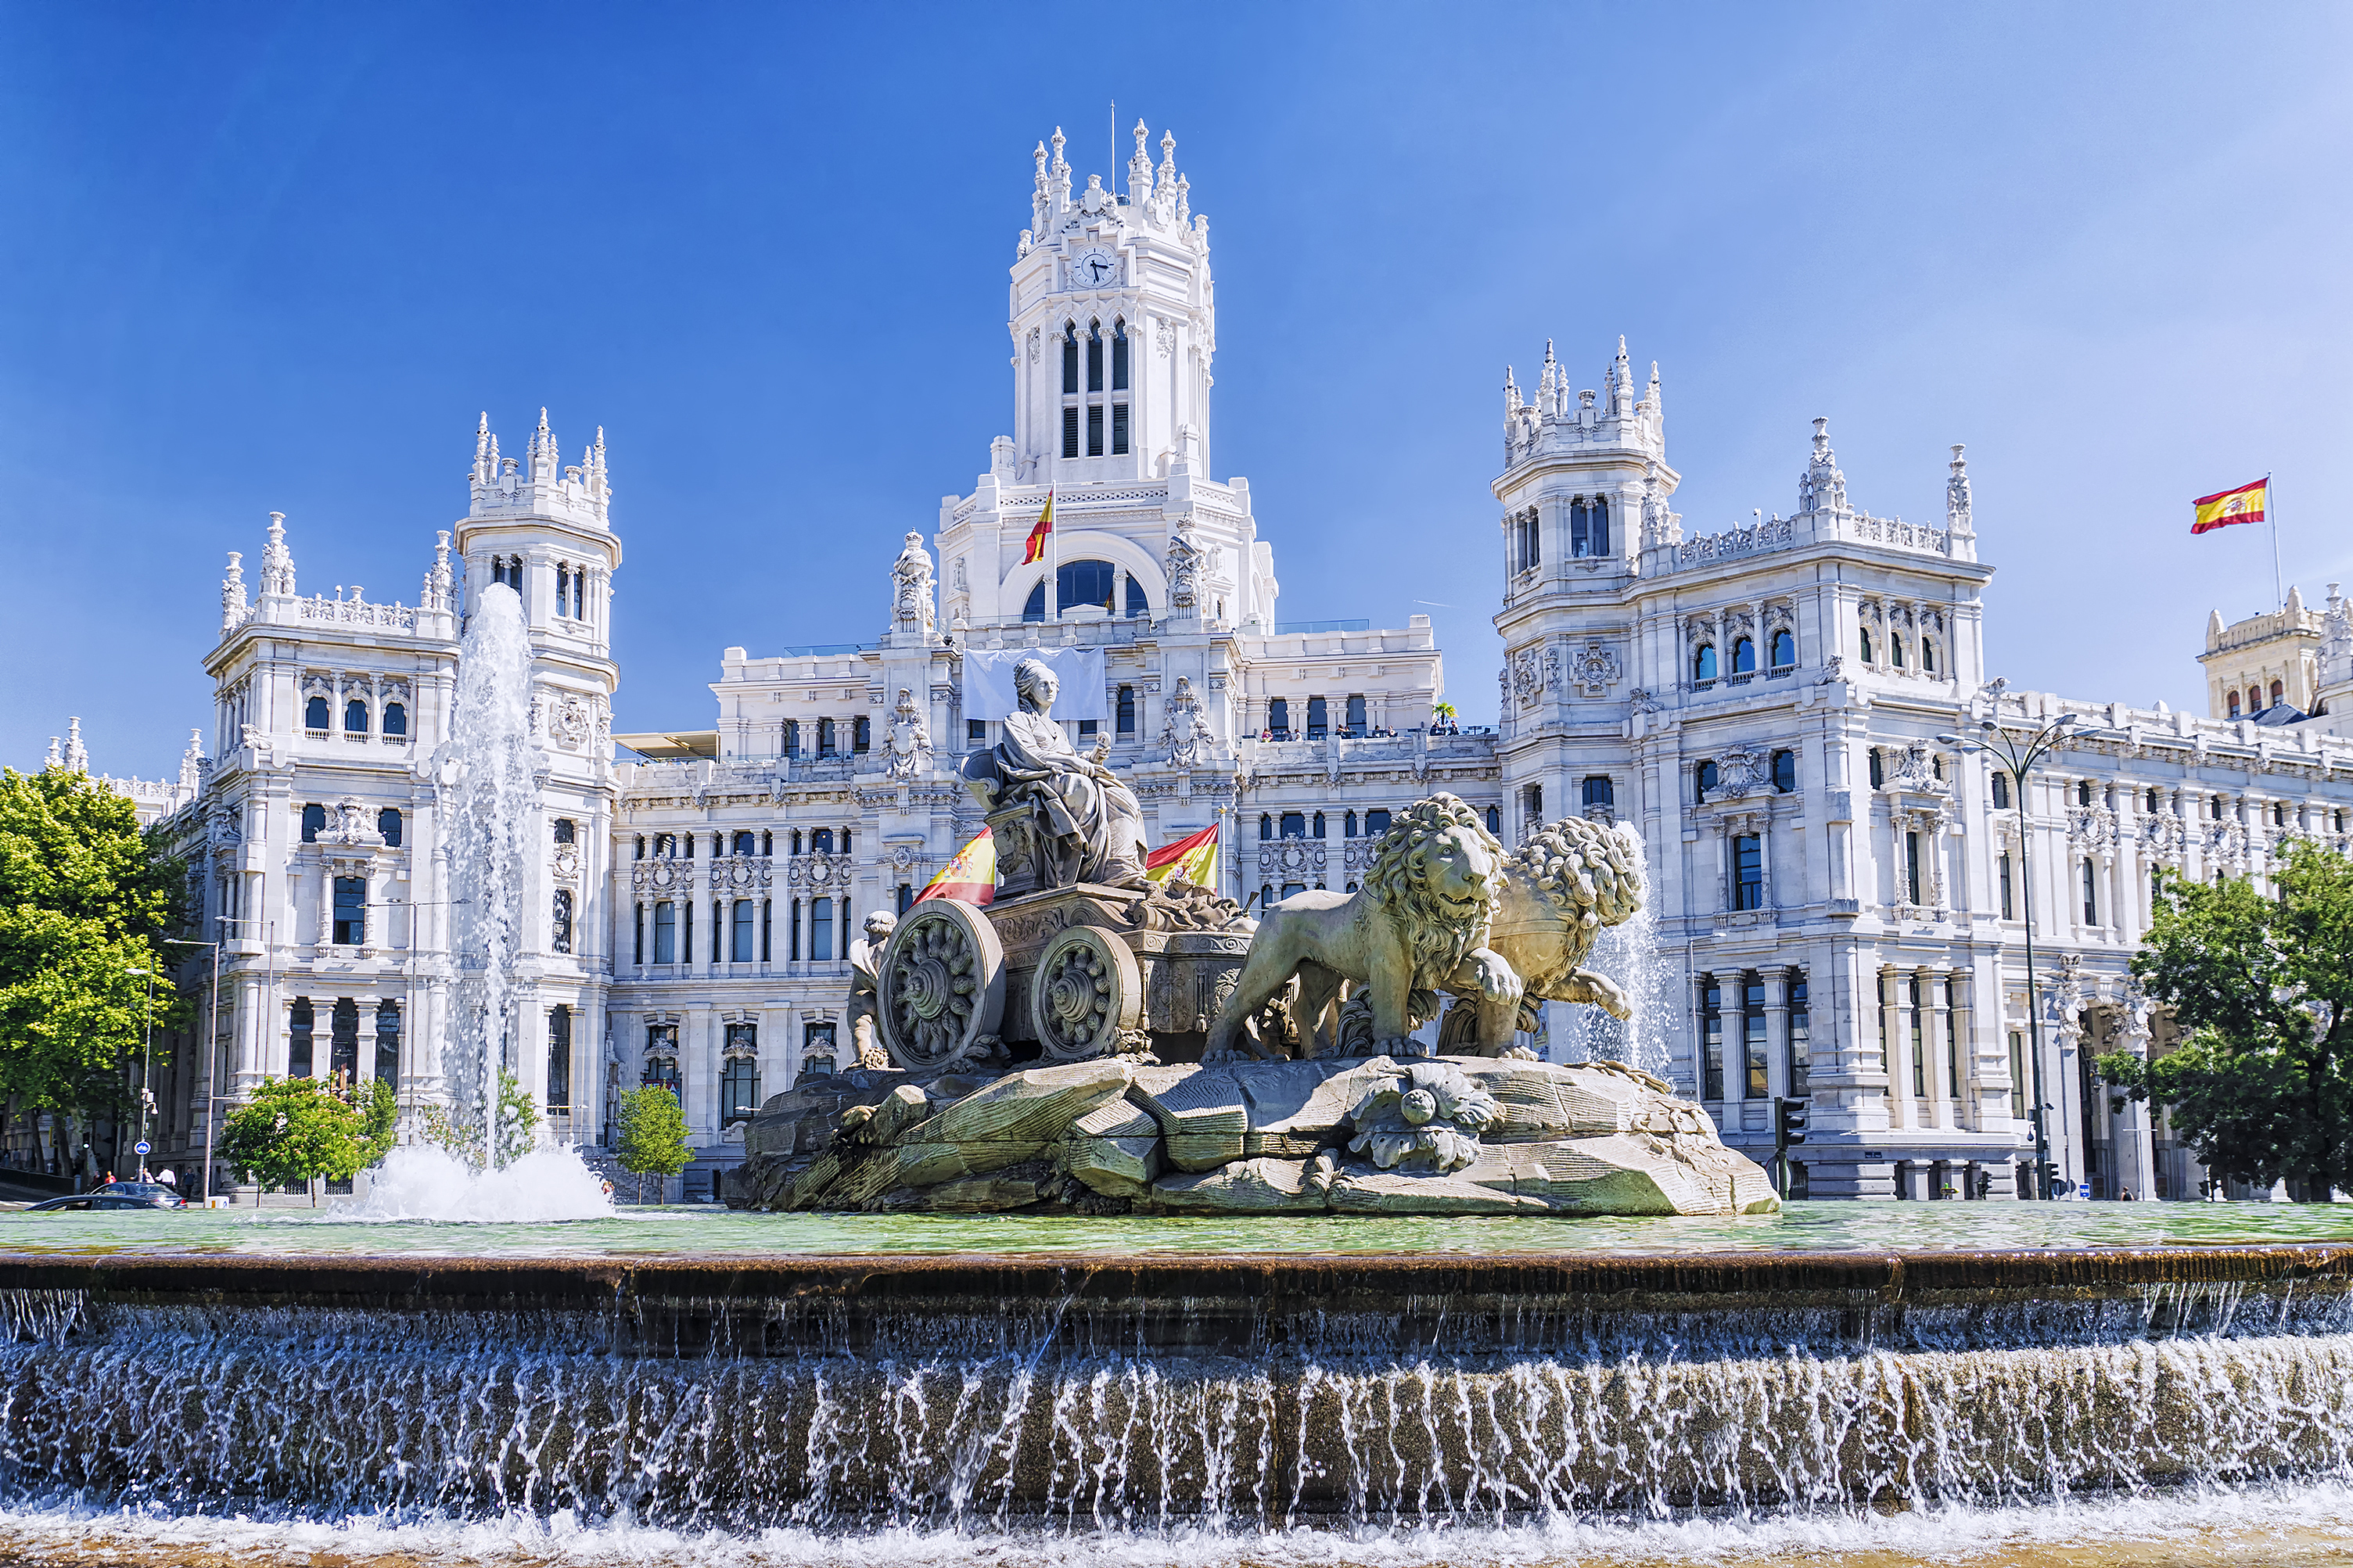 Фонтан Сибелес в Мадриде, столице Испании, ПМЖ которой могут получить иностранцы